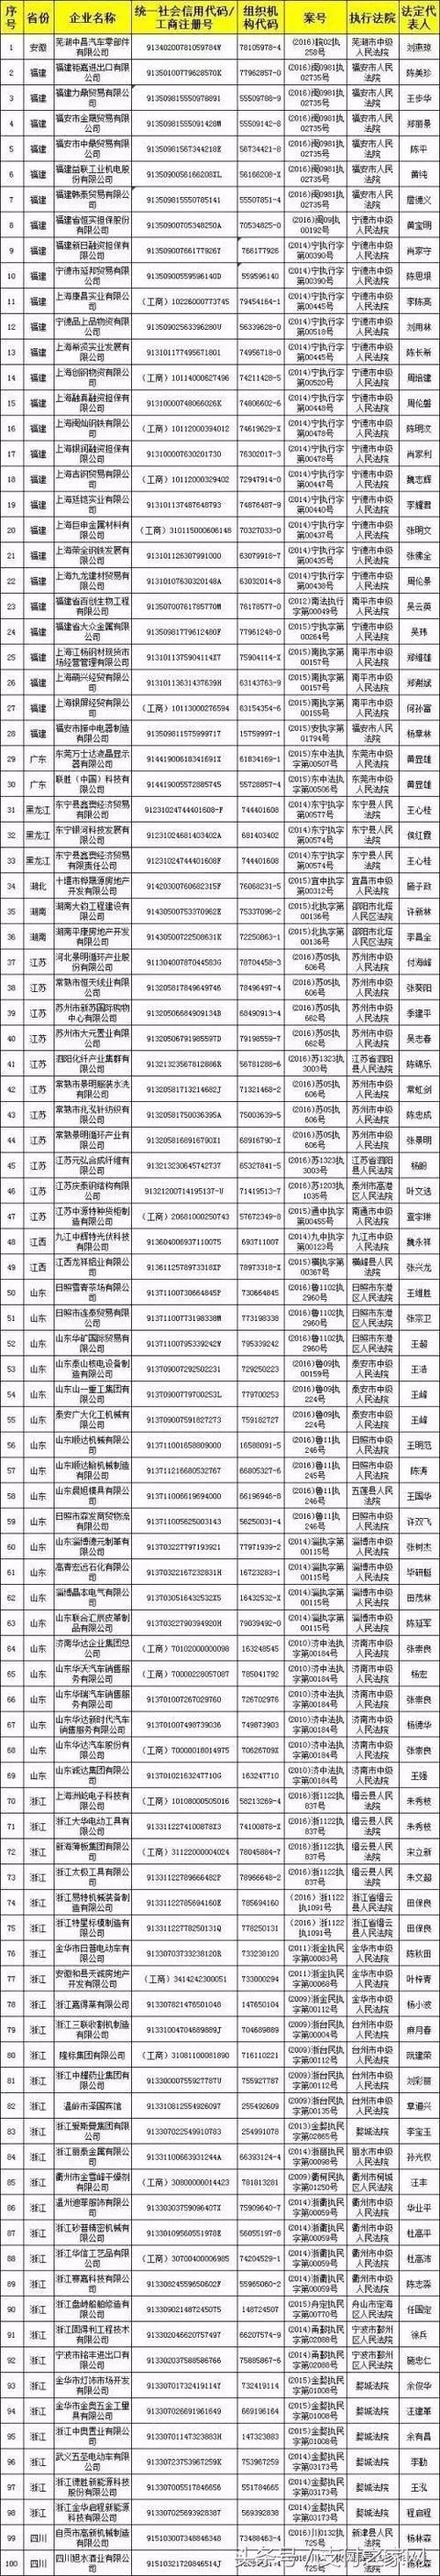 中郭晶币总公司子公司库管员盗425万晶币 12月网